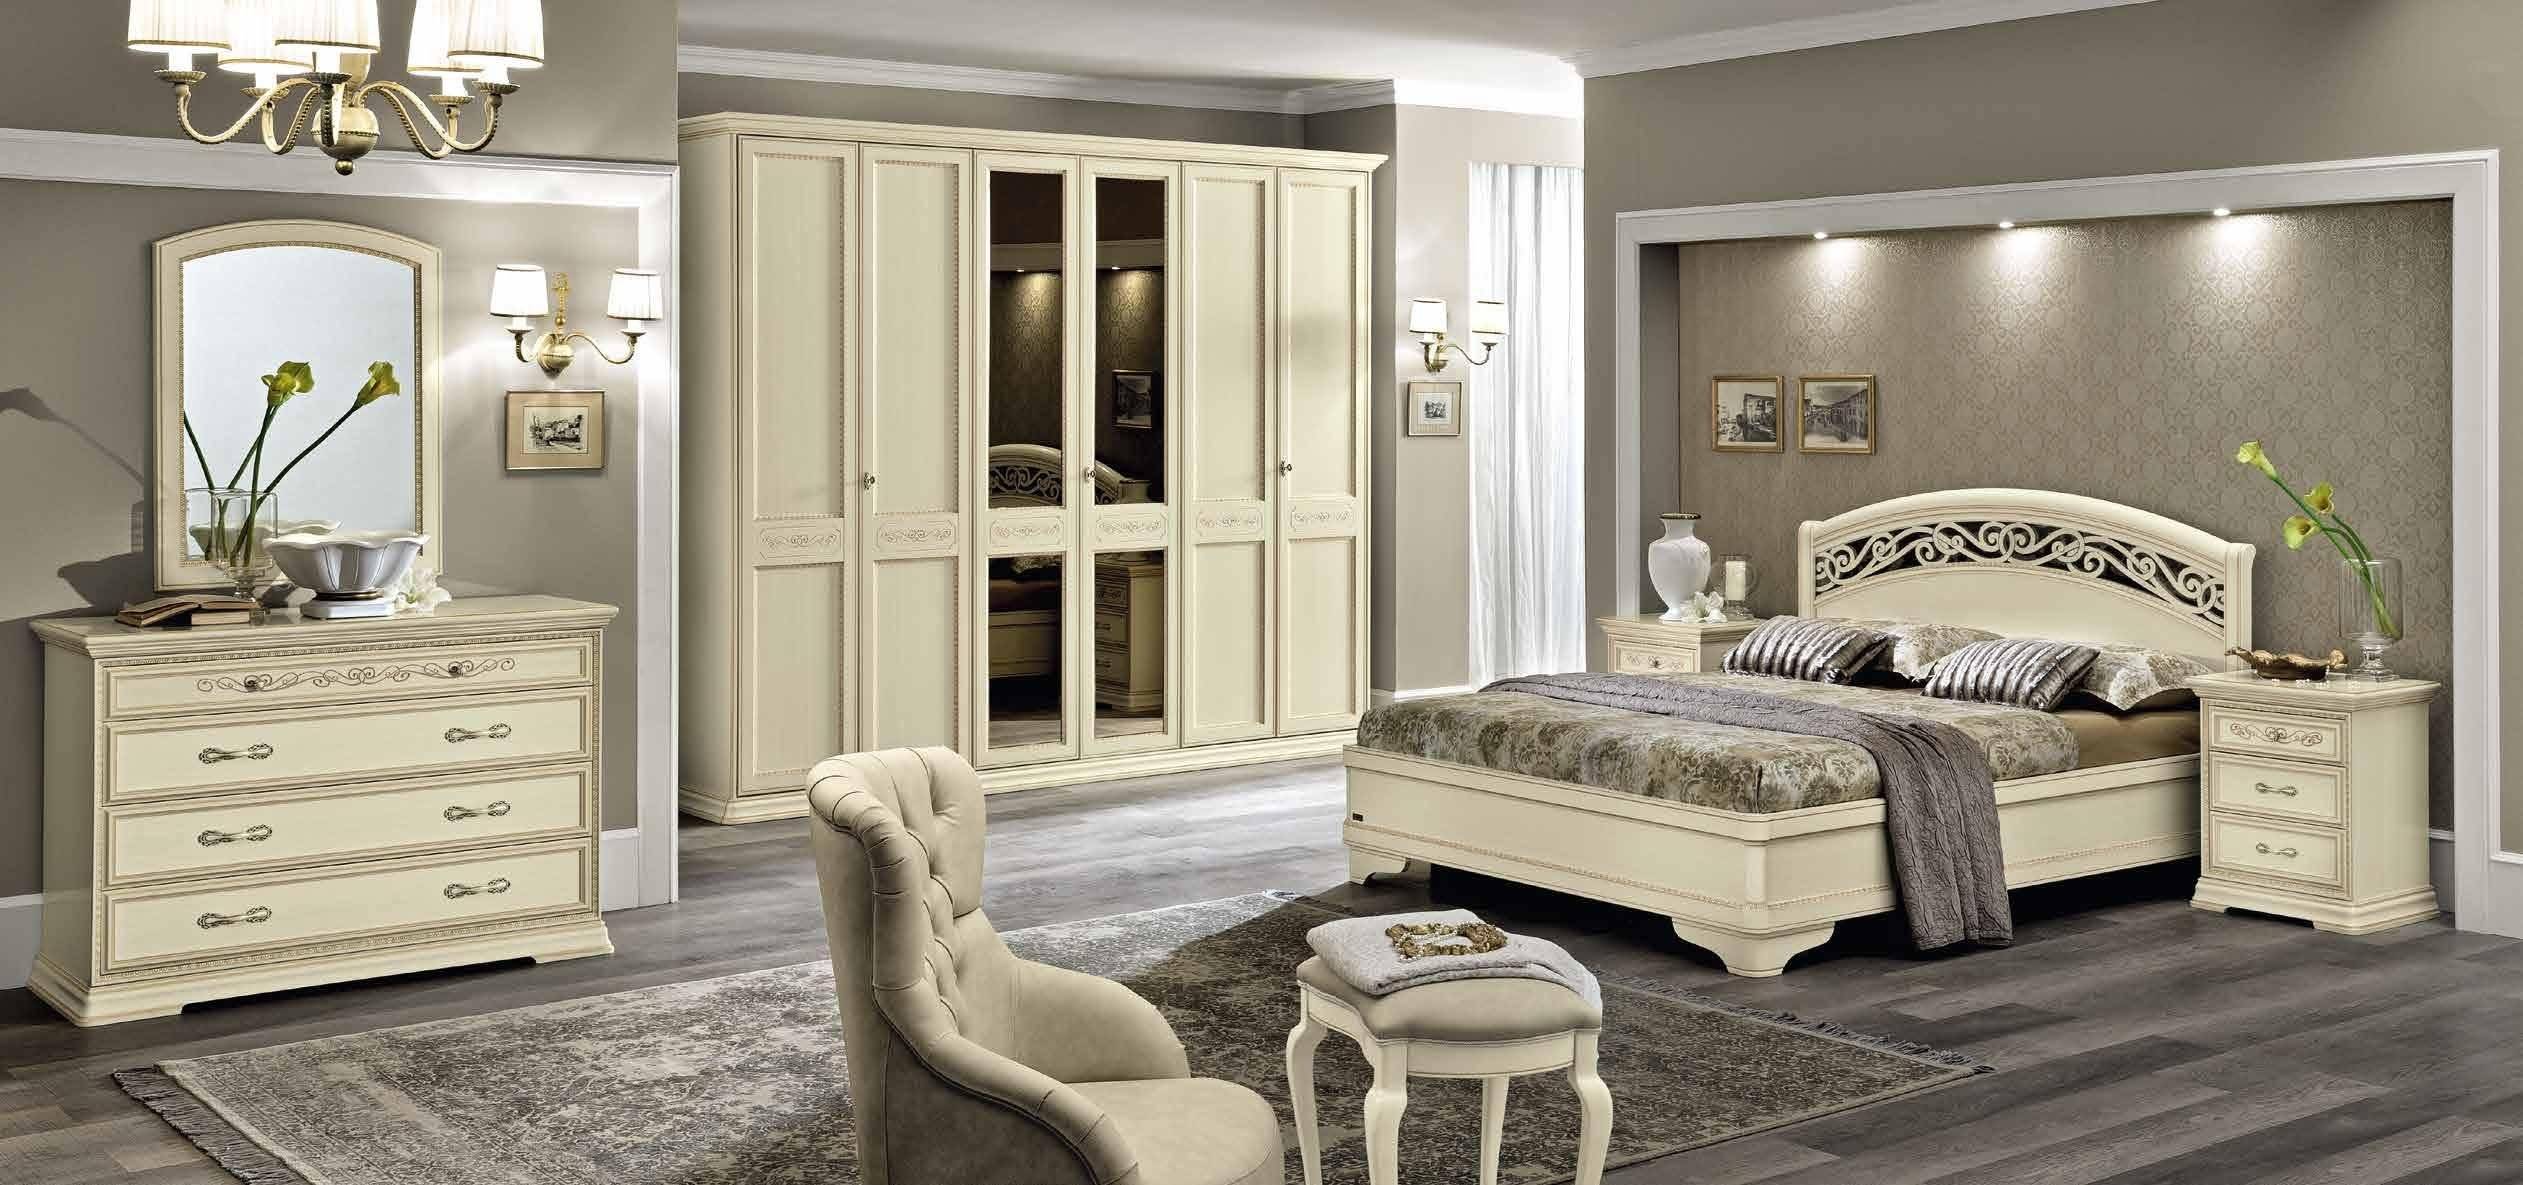 Большие и маленькие спальни в классическом стиле, 11 красивых фото интерьеров спален в стиле классика, выбор мебели, цвета обоев, штор и декора